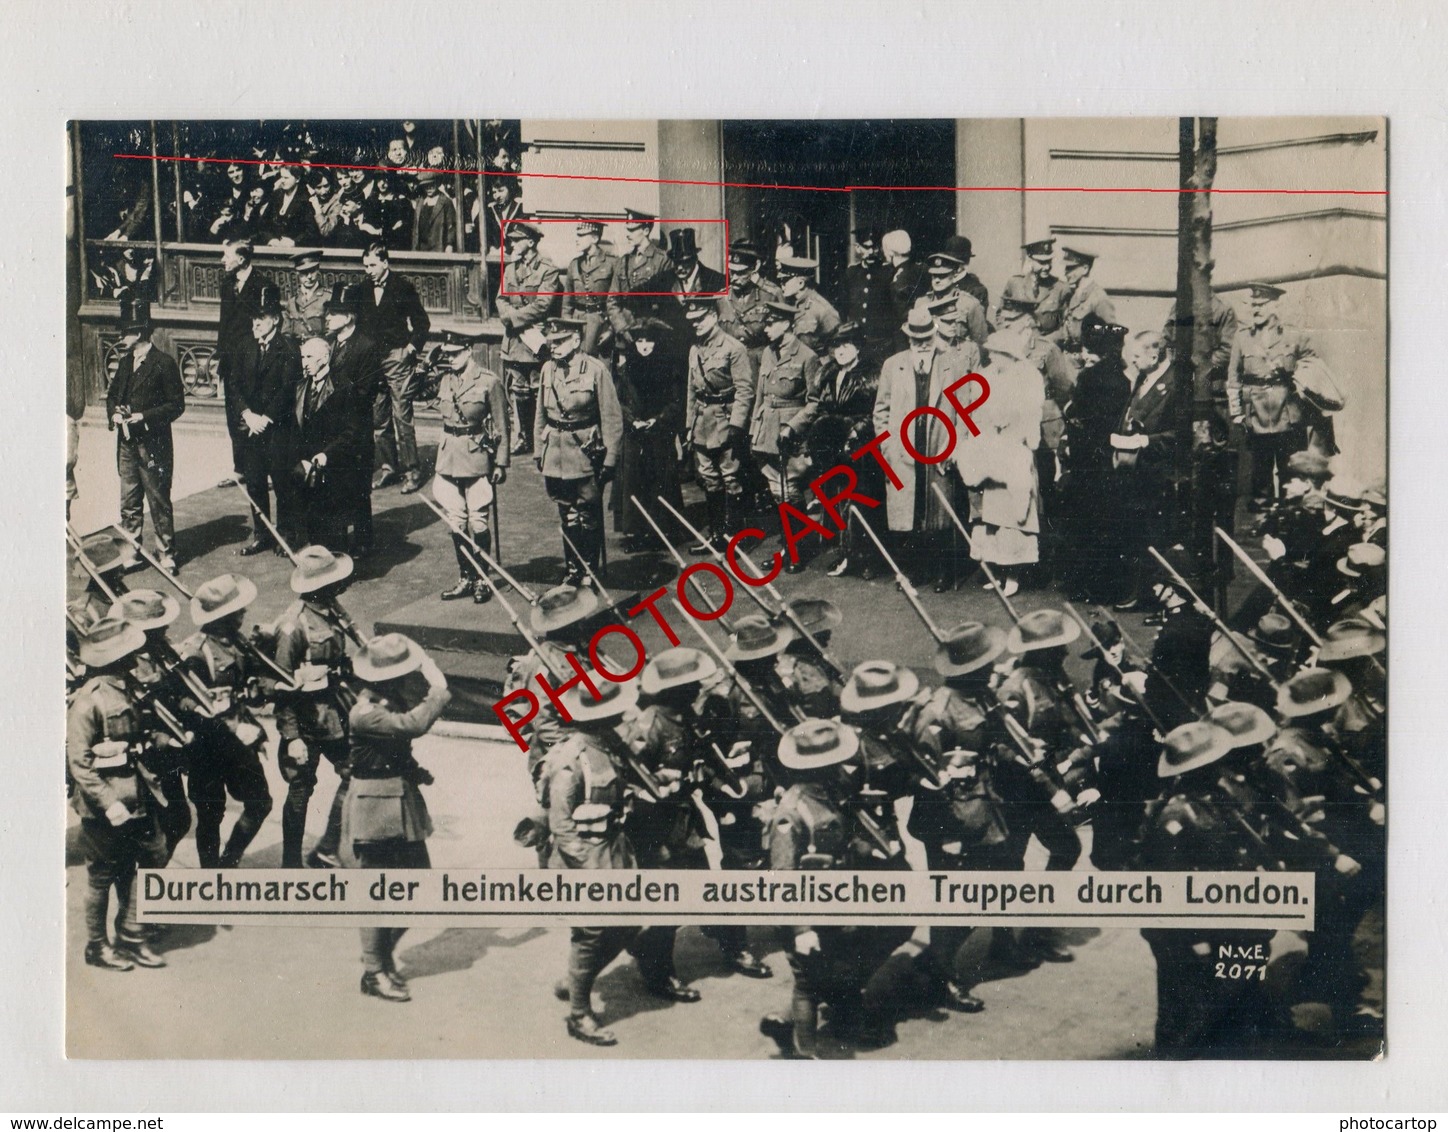 LONDON-Retour Troupes AUSTRALIENNES-Guerre 14-18-1WK-Grosse PHOTO Allemande-N.V.E. - Guerre 1914-18